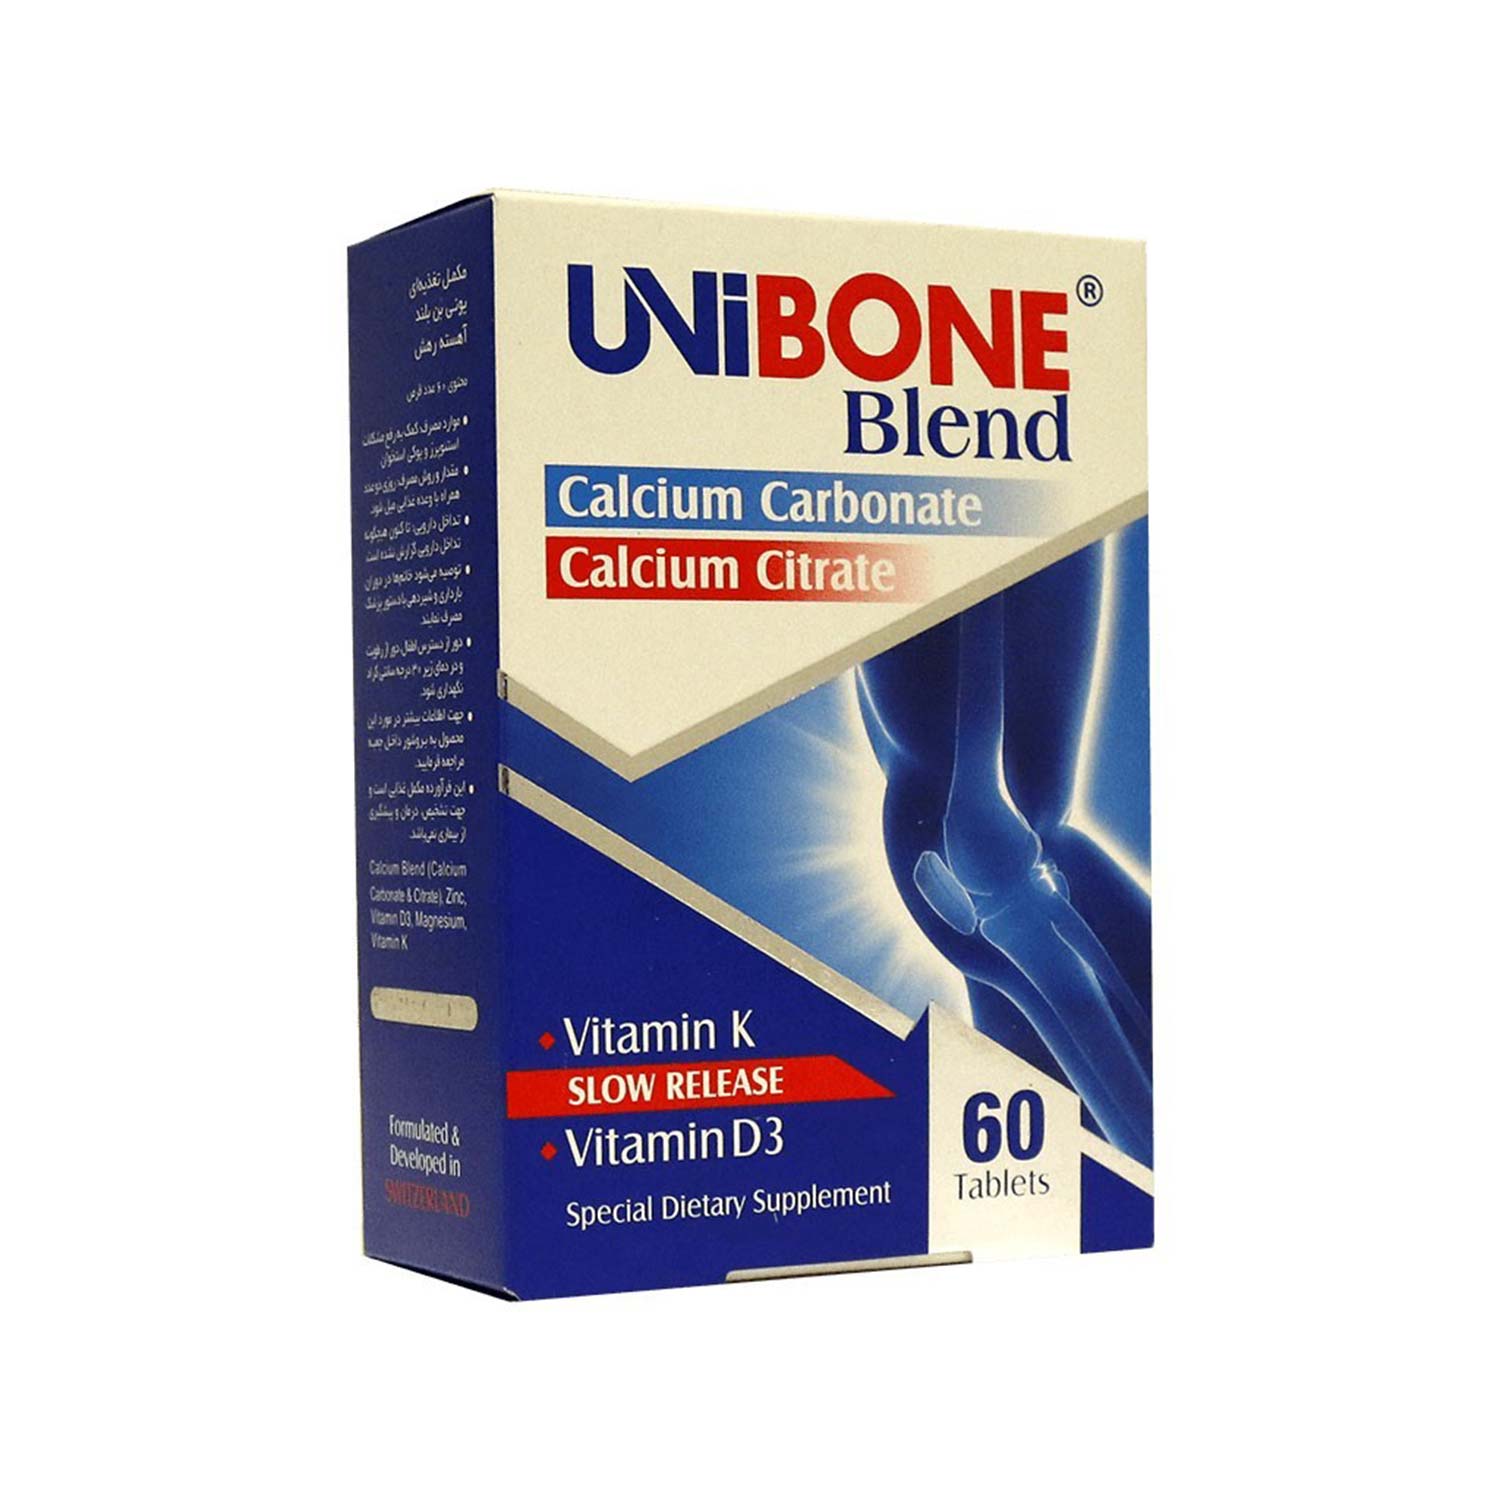 قرص یونی بون بلند (UniBone Blend) مخصوص استخوان ها